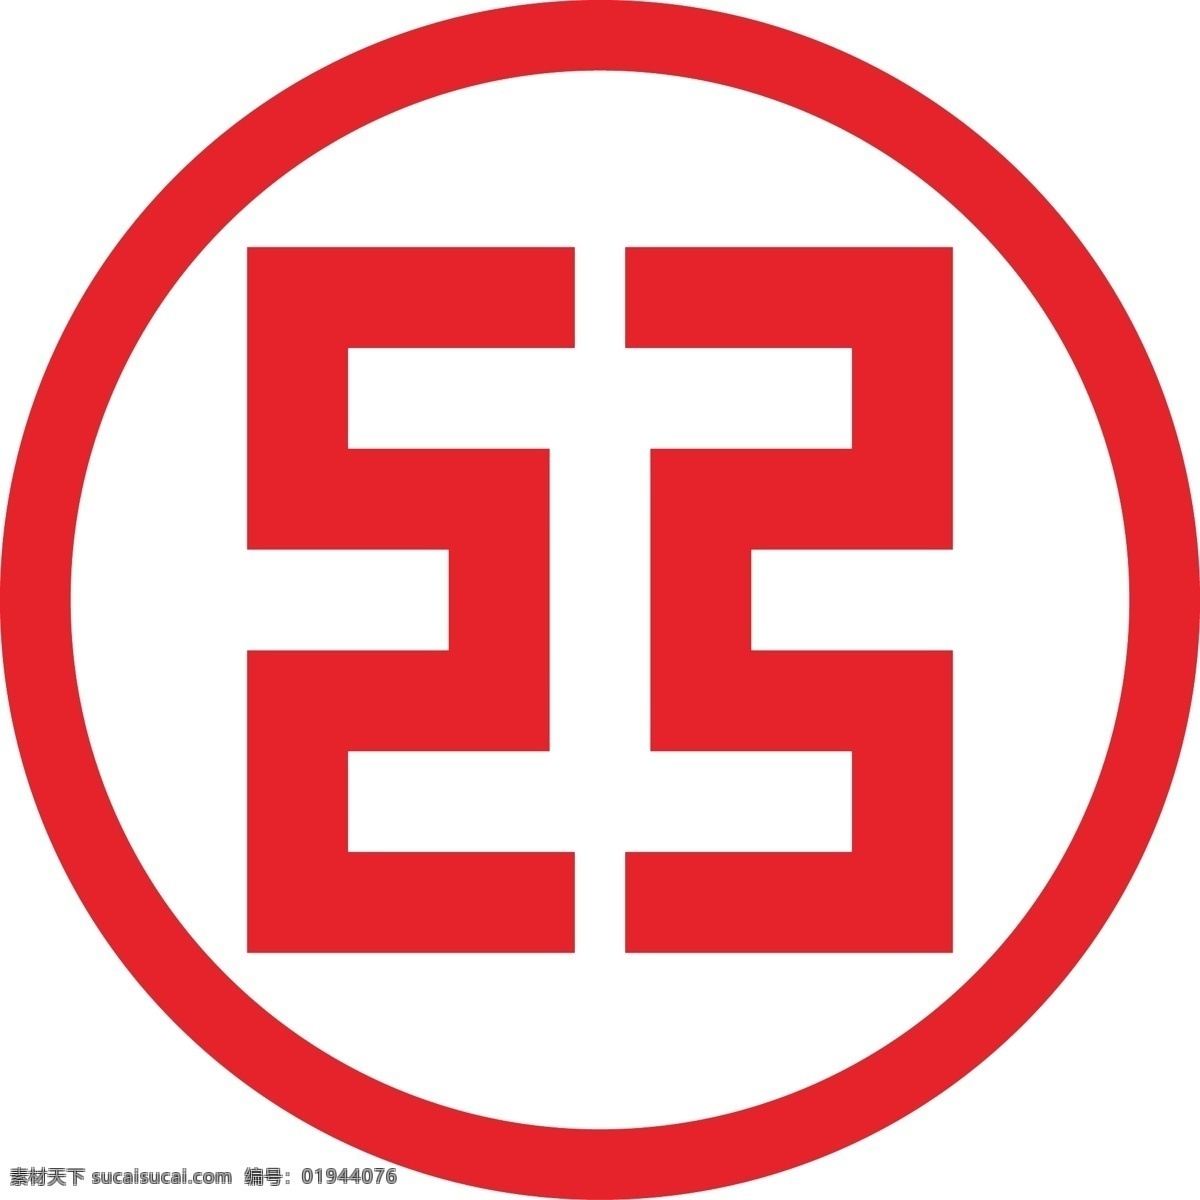 工行标志 网格工具 绘制 工商银行 logo 招贴设计